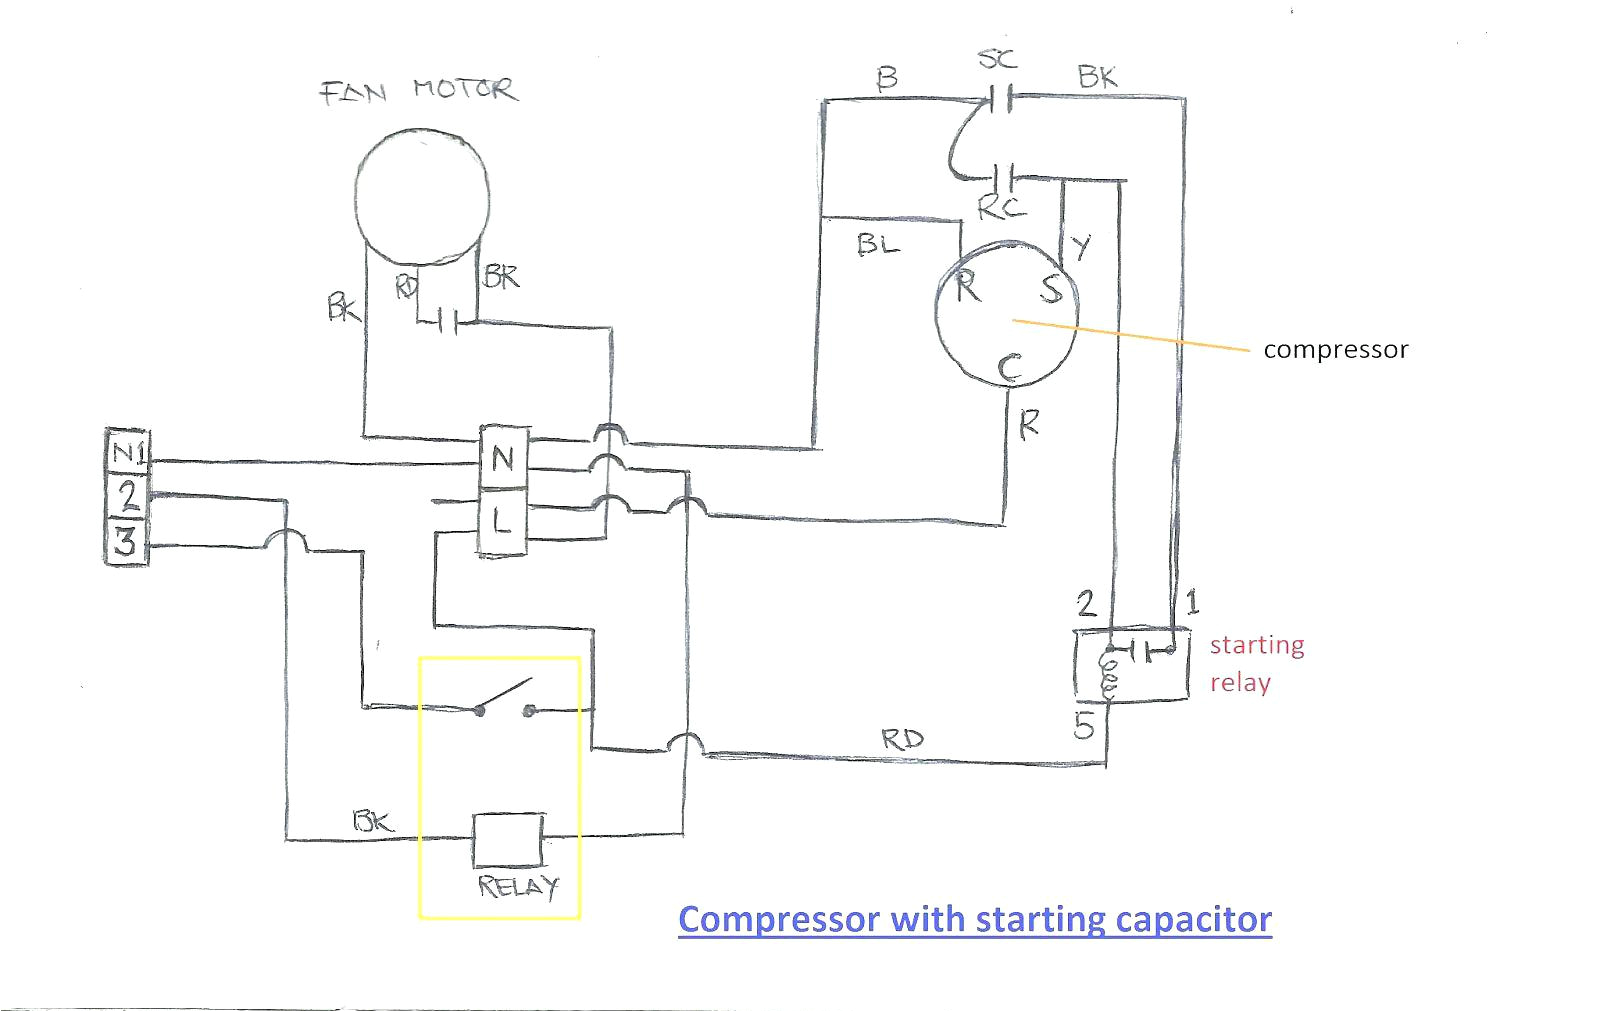 baldor motor wiring diagrams single phase baldor motor capacitor wiring diagram with diagrams single phase to of baldor motor wiring diagrams single phase jpg